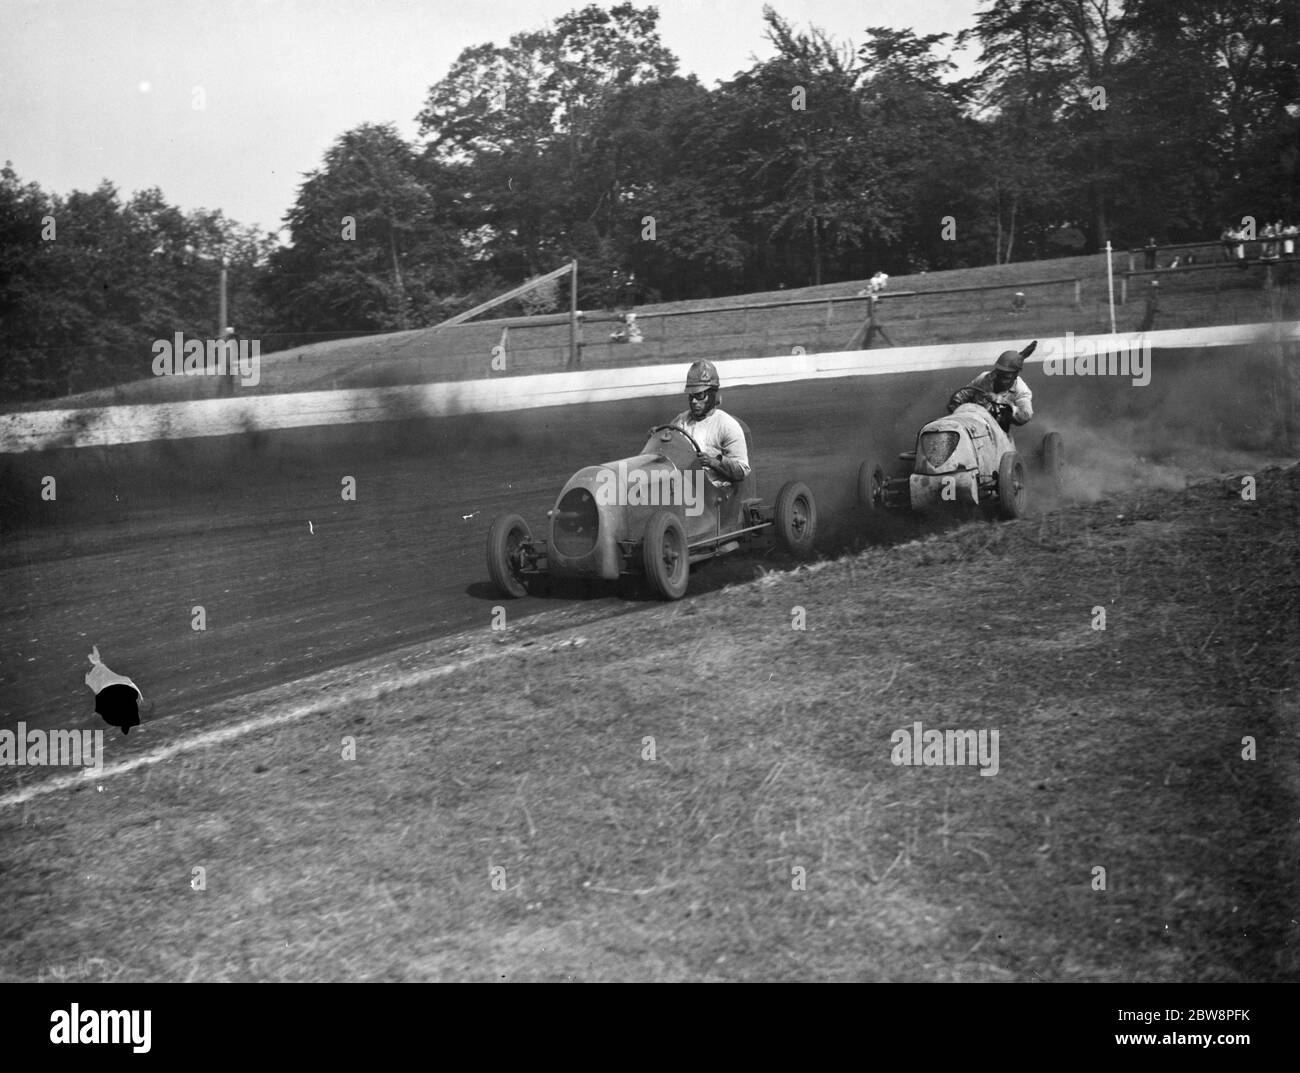 Le Grand prix de la course de voitures miniatures Crystal Palace . Les voitures prennent le virage . 1938 Banque D'Images